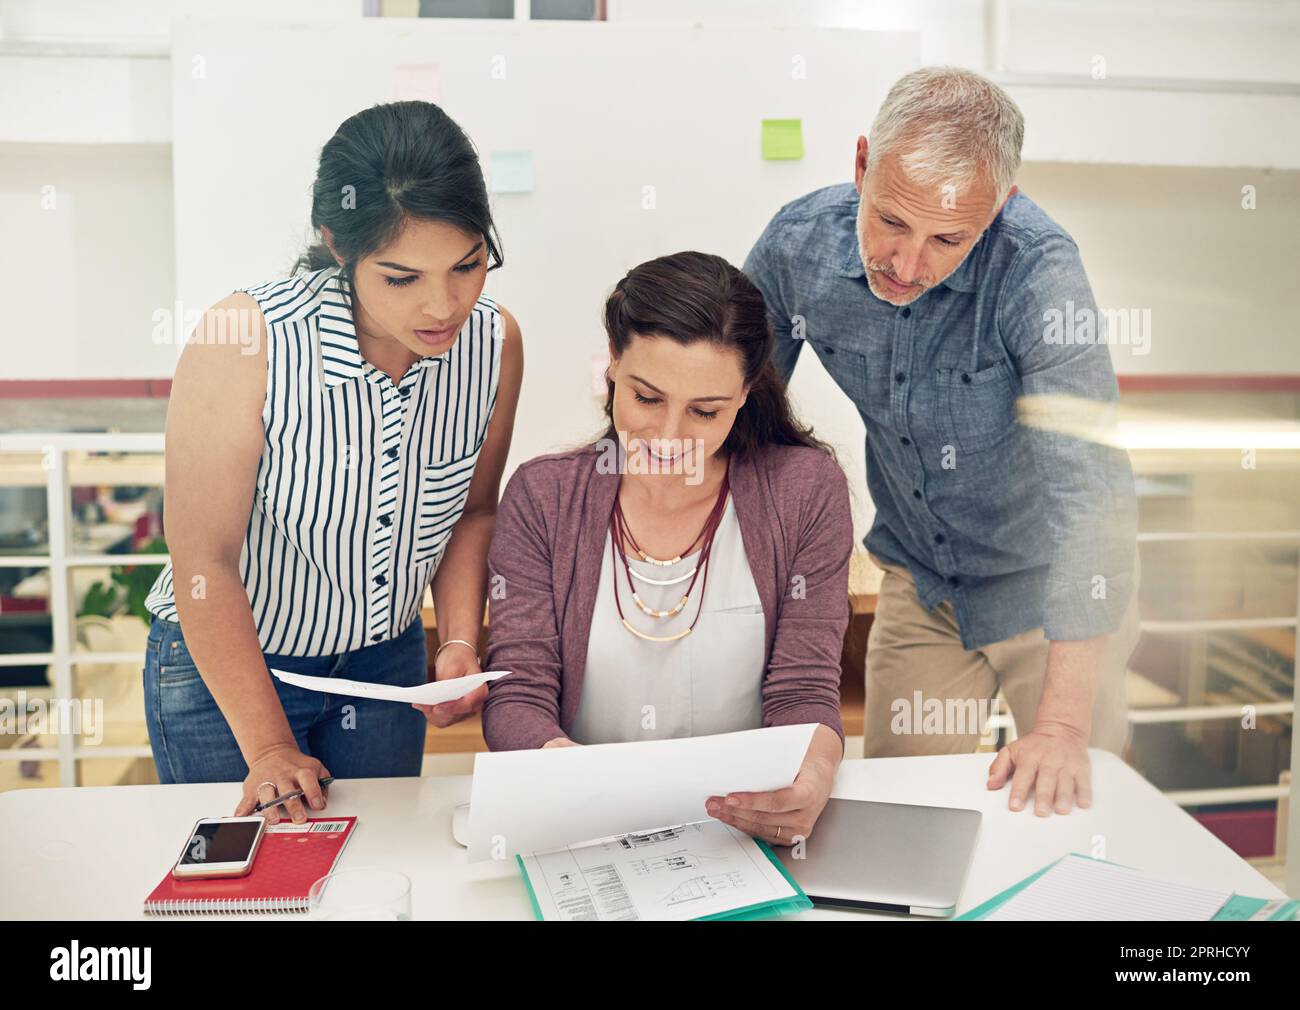 Arbeiten als Team, um die besten Lösungen zu finden. Ein Team von Kollegen, die ein Meeting in einem modernen Büro abhalten. Stockfoto